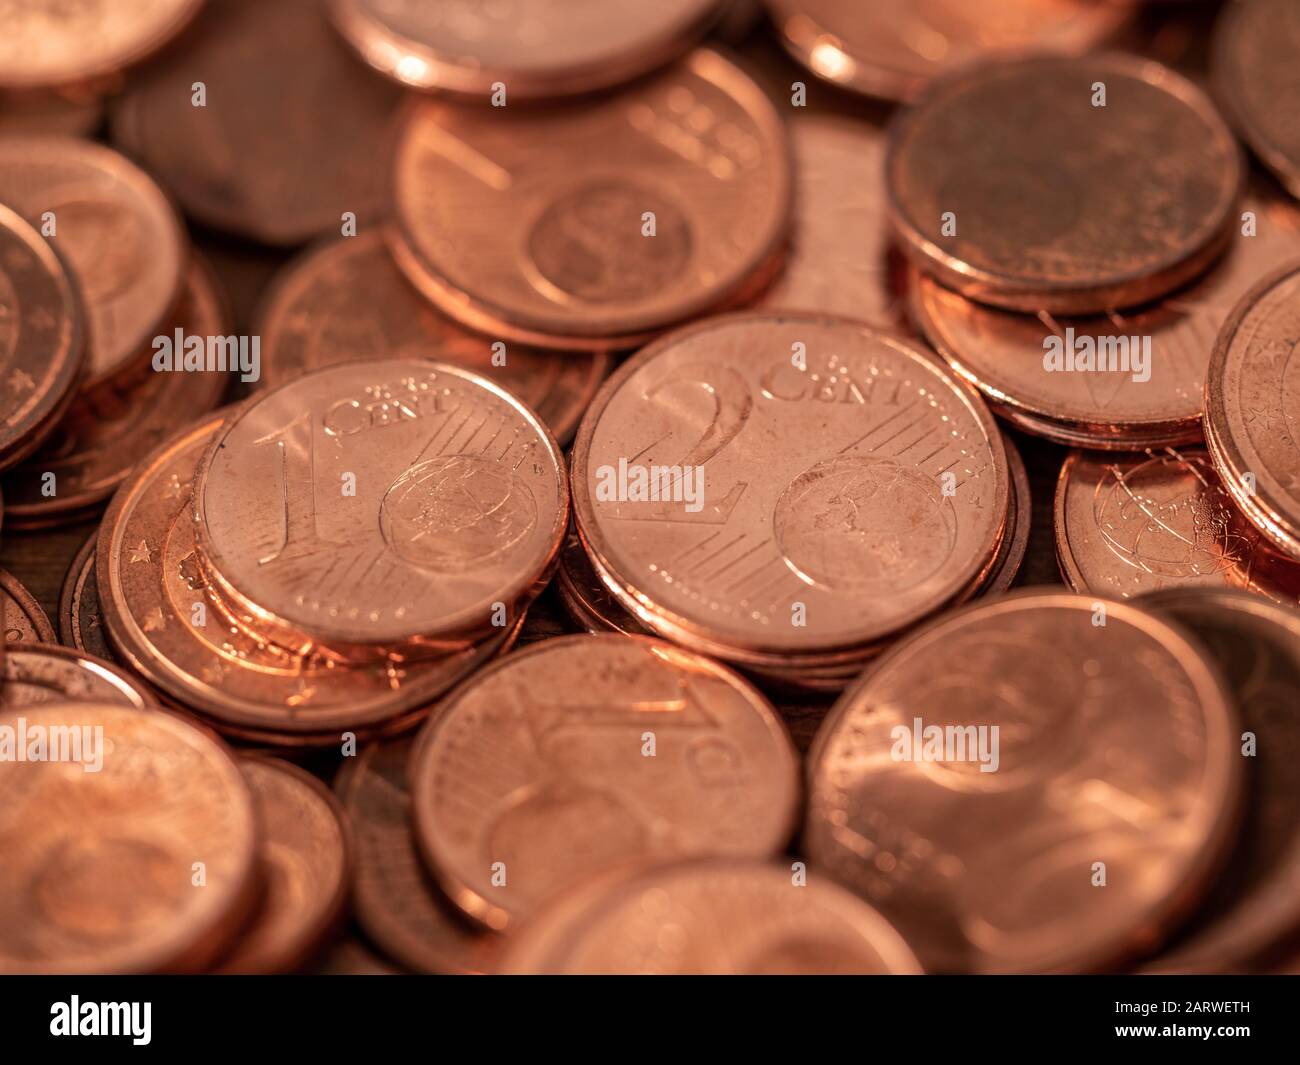 L'immagine piena di centesimi di euro, moneta di rame, moneta da uno e due centesimi sarà respinta dalla BCE Foto Stock